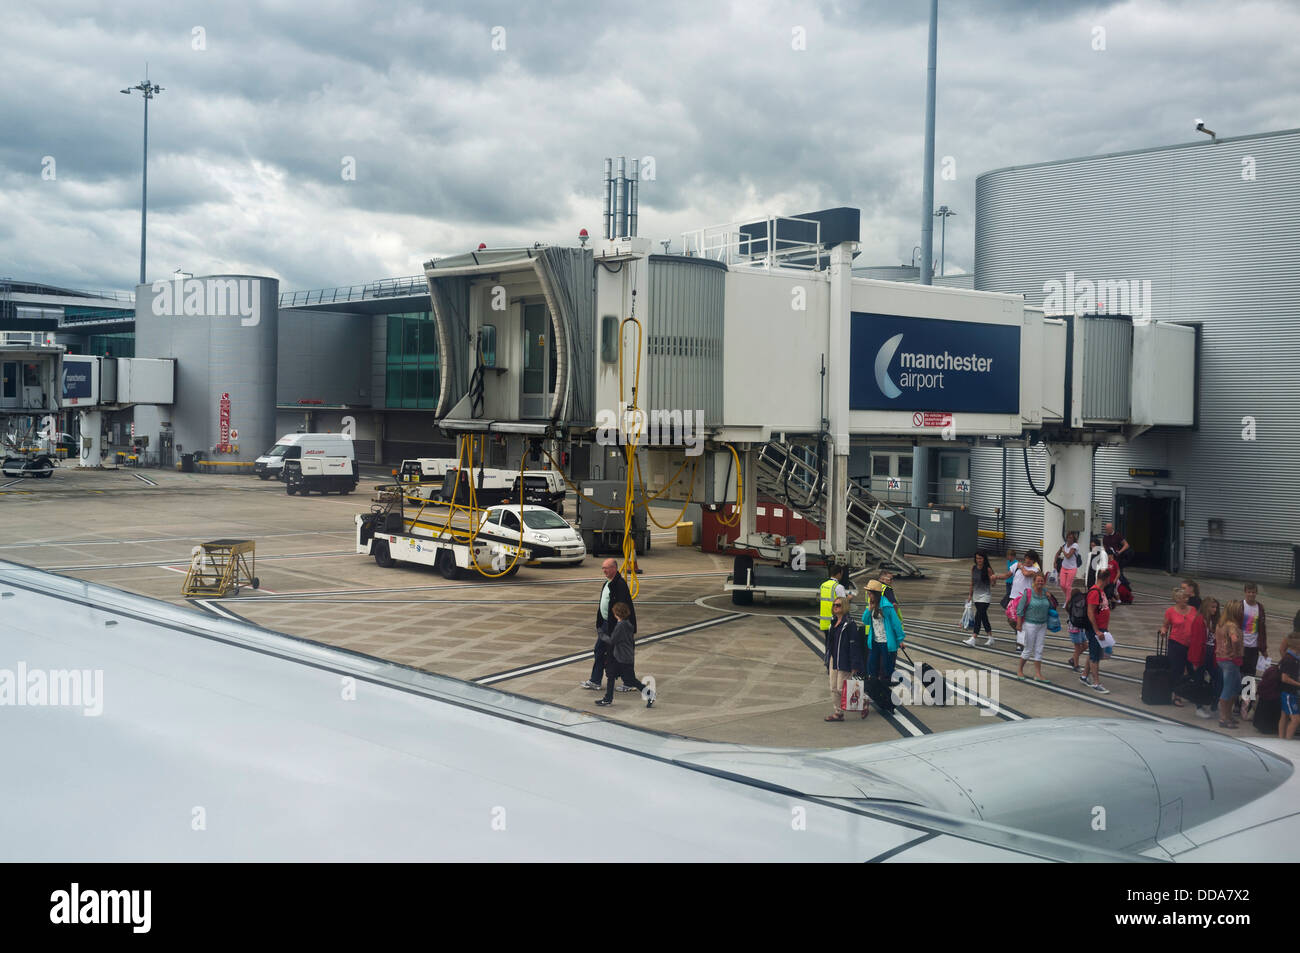 L'aéroport de Manchester vue depuis l'intérieur de la cabine d'un avion stationné, England, UK. Banque D'Images